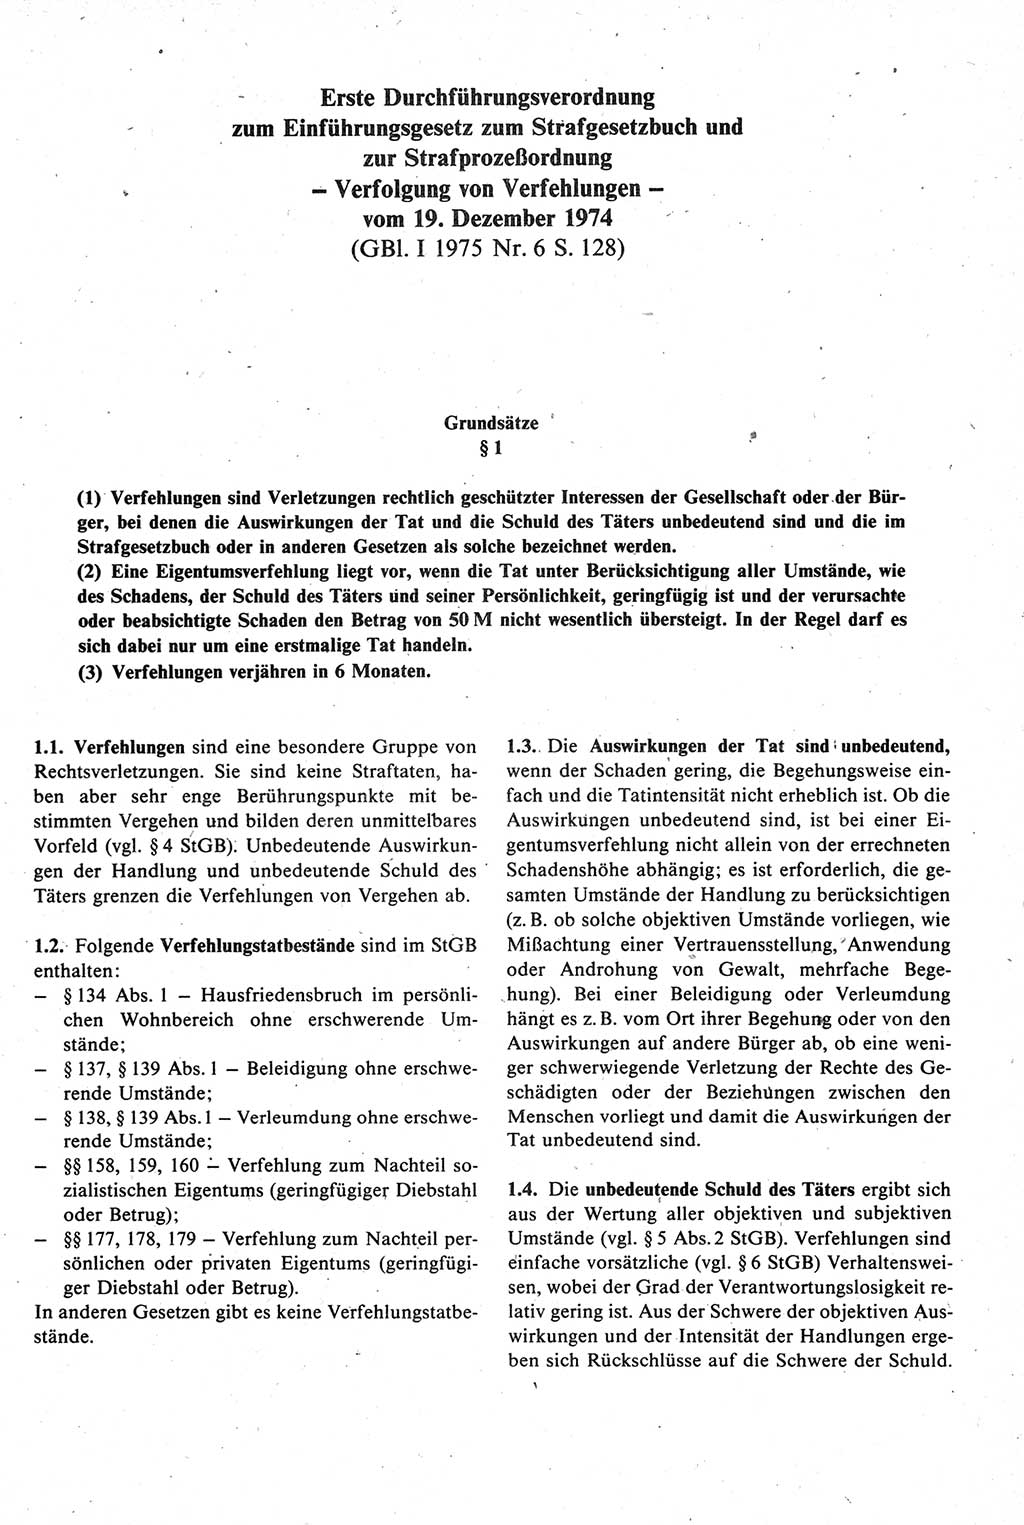 Strafprozeßrecht der DDR [Deutsche Demokratische Republik], Kommentar zur Strafprozeßordnung (StPO) 1987, Seite 503 (Strafprozeßr. DDR Komm. StPO 1987, S. 503)